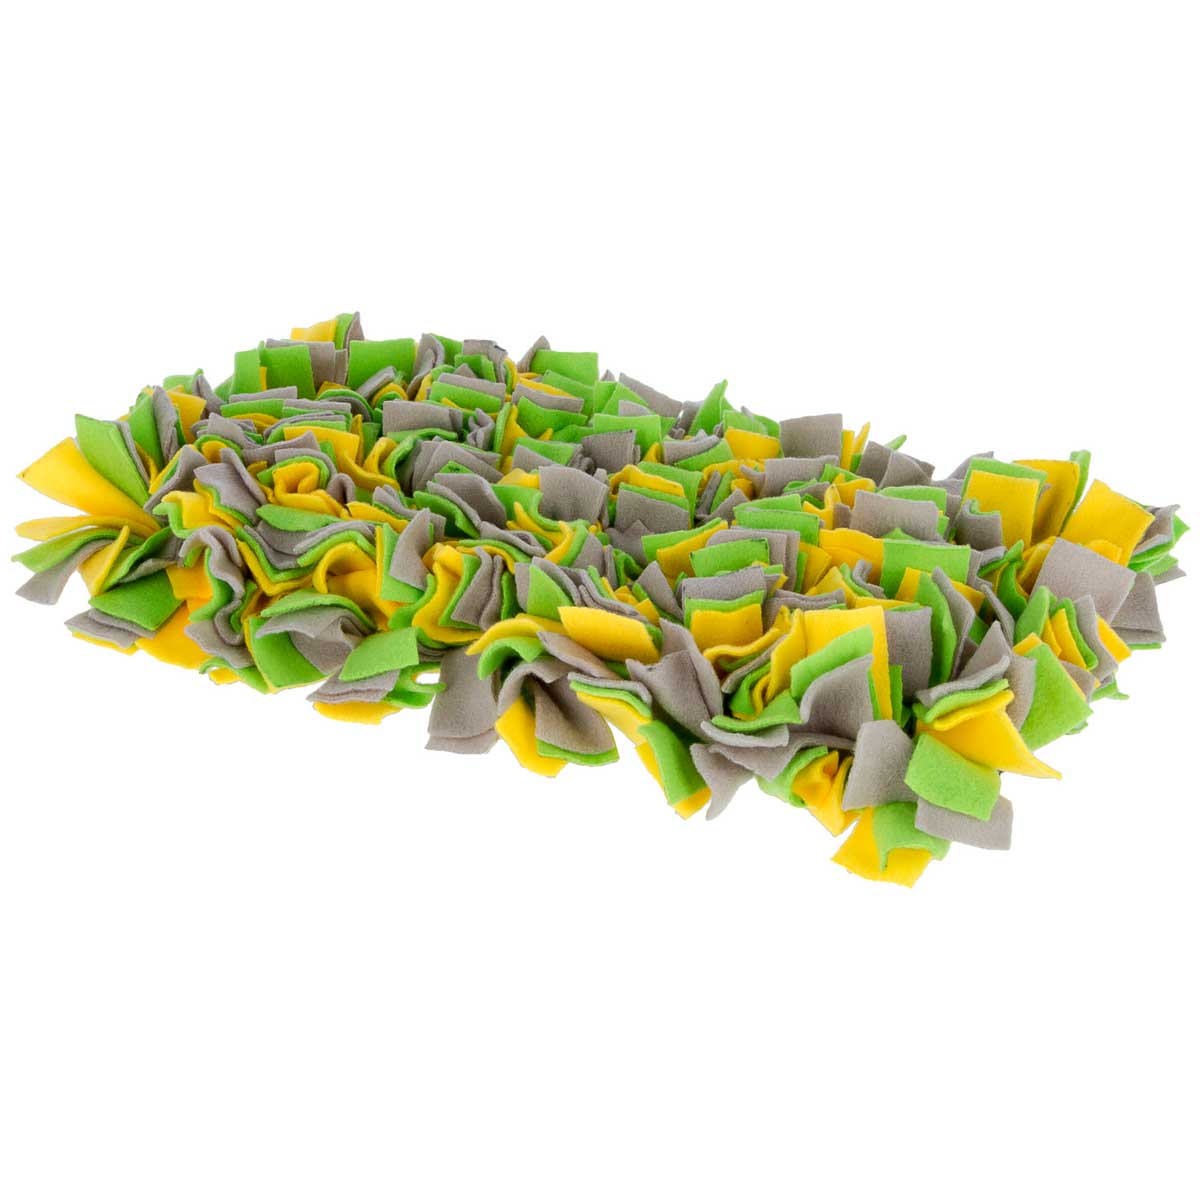 Kerbl Tappeto da annusare giallo/verde/grigio 50 x 30 cm